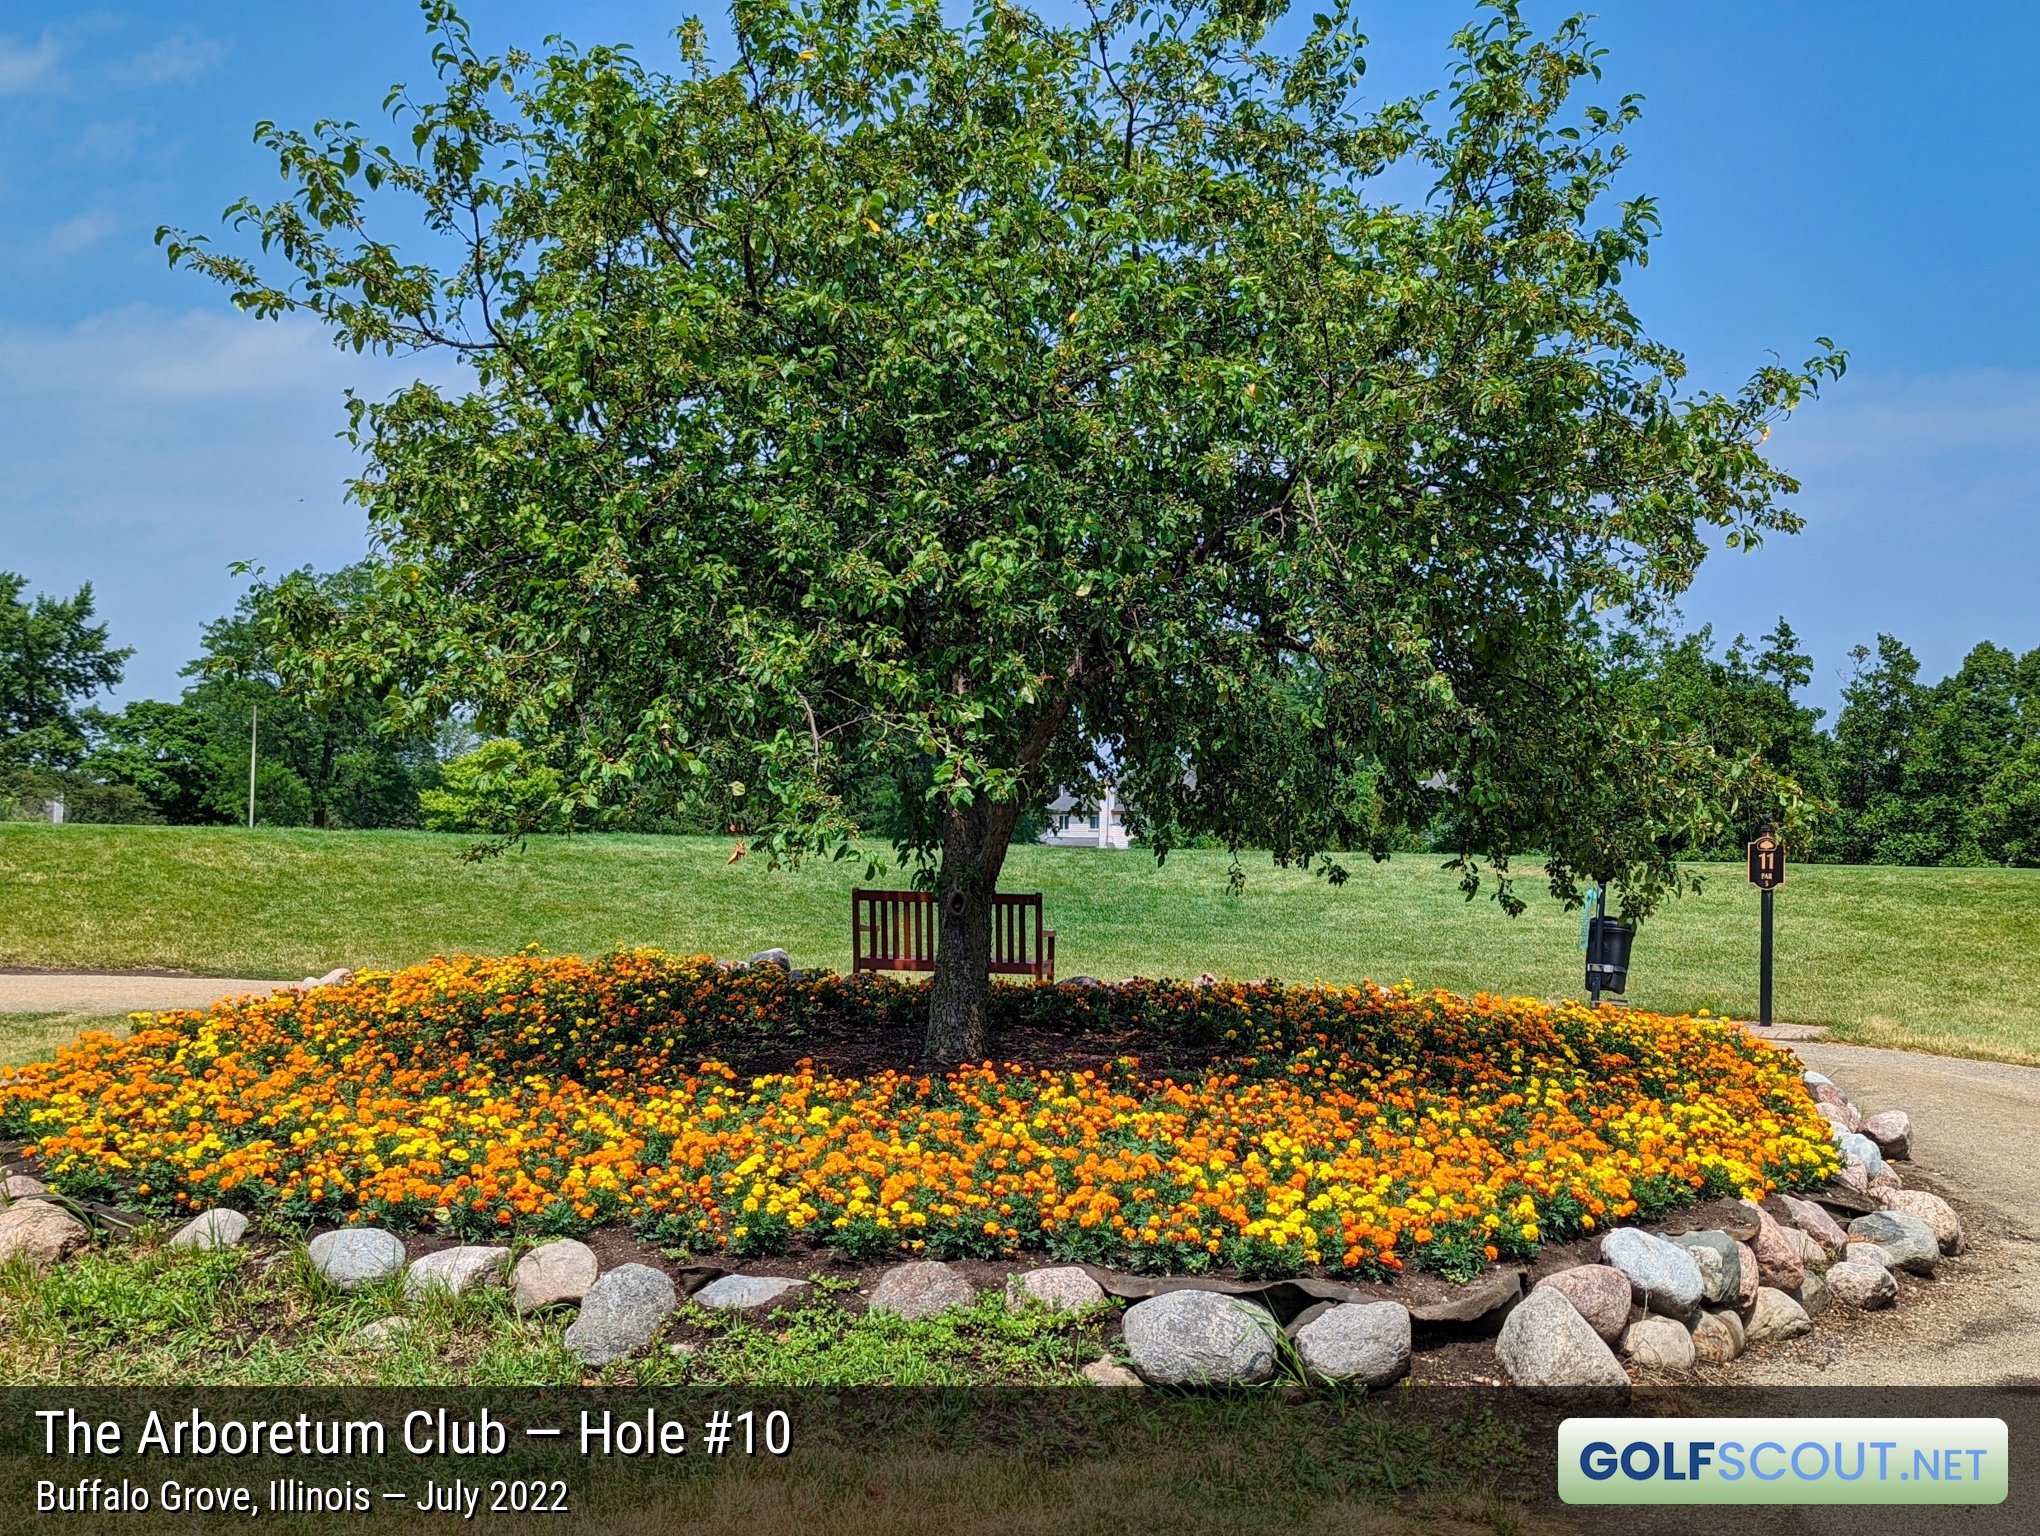 Photo of hole #10 at Arboretum Club in Buffalo Grove, Illinois. 